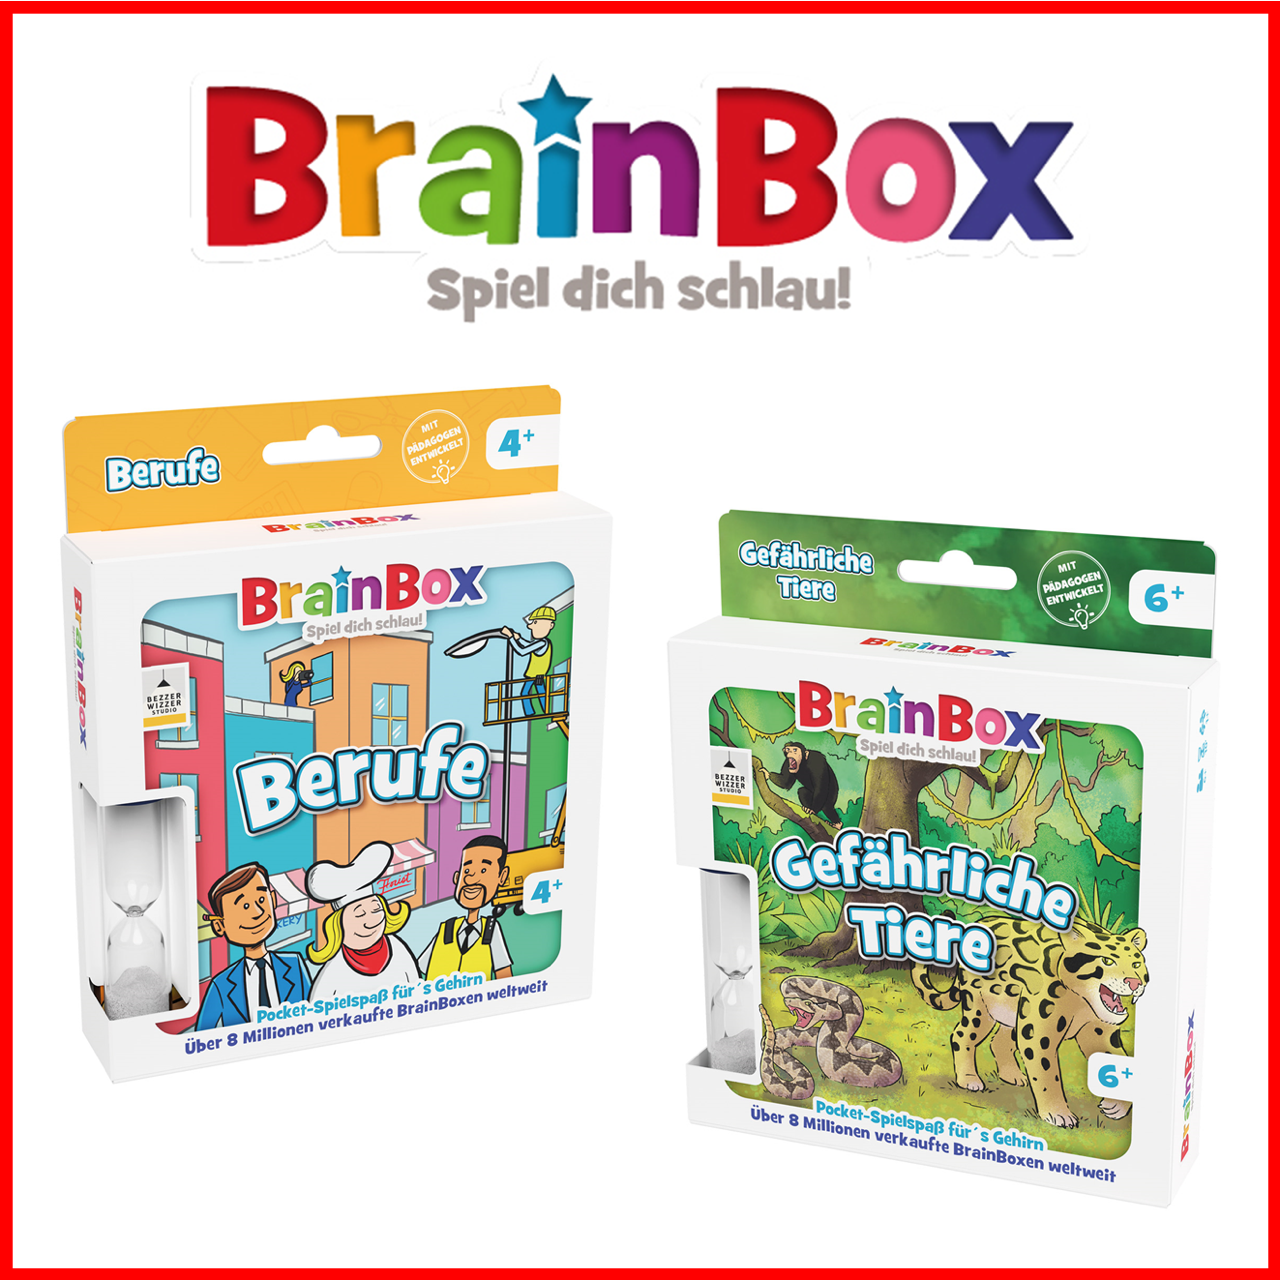 BrainBox startet mit neuer Pocket-Edition – ideal für unterwegs